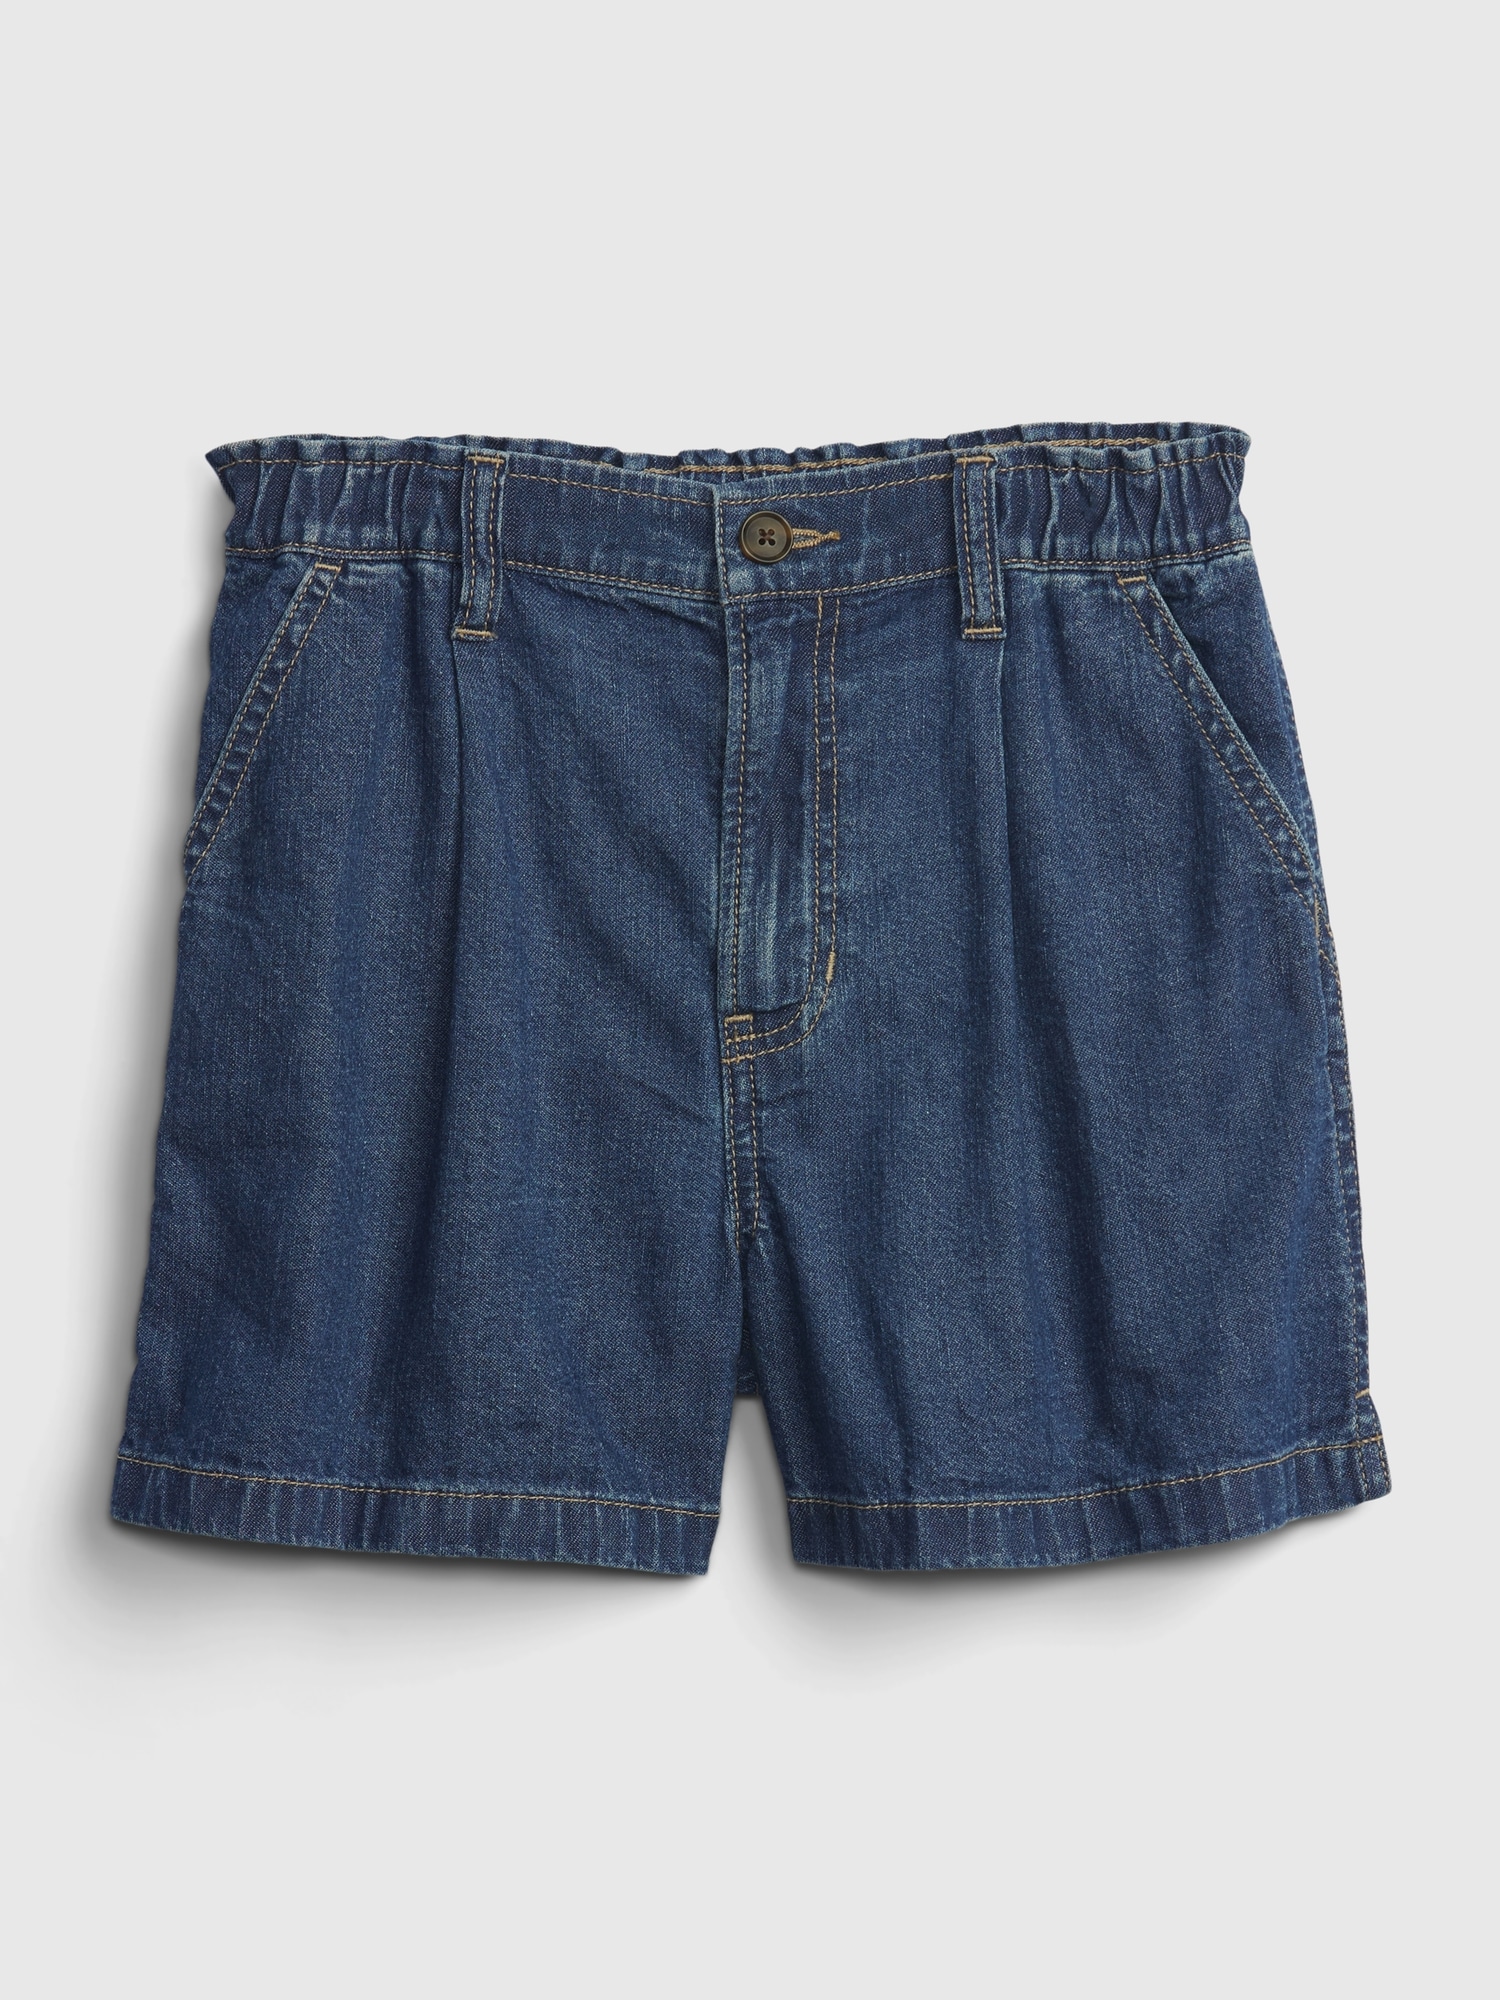 Jeans | Gap Kids Shorts